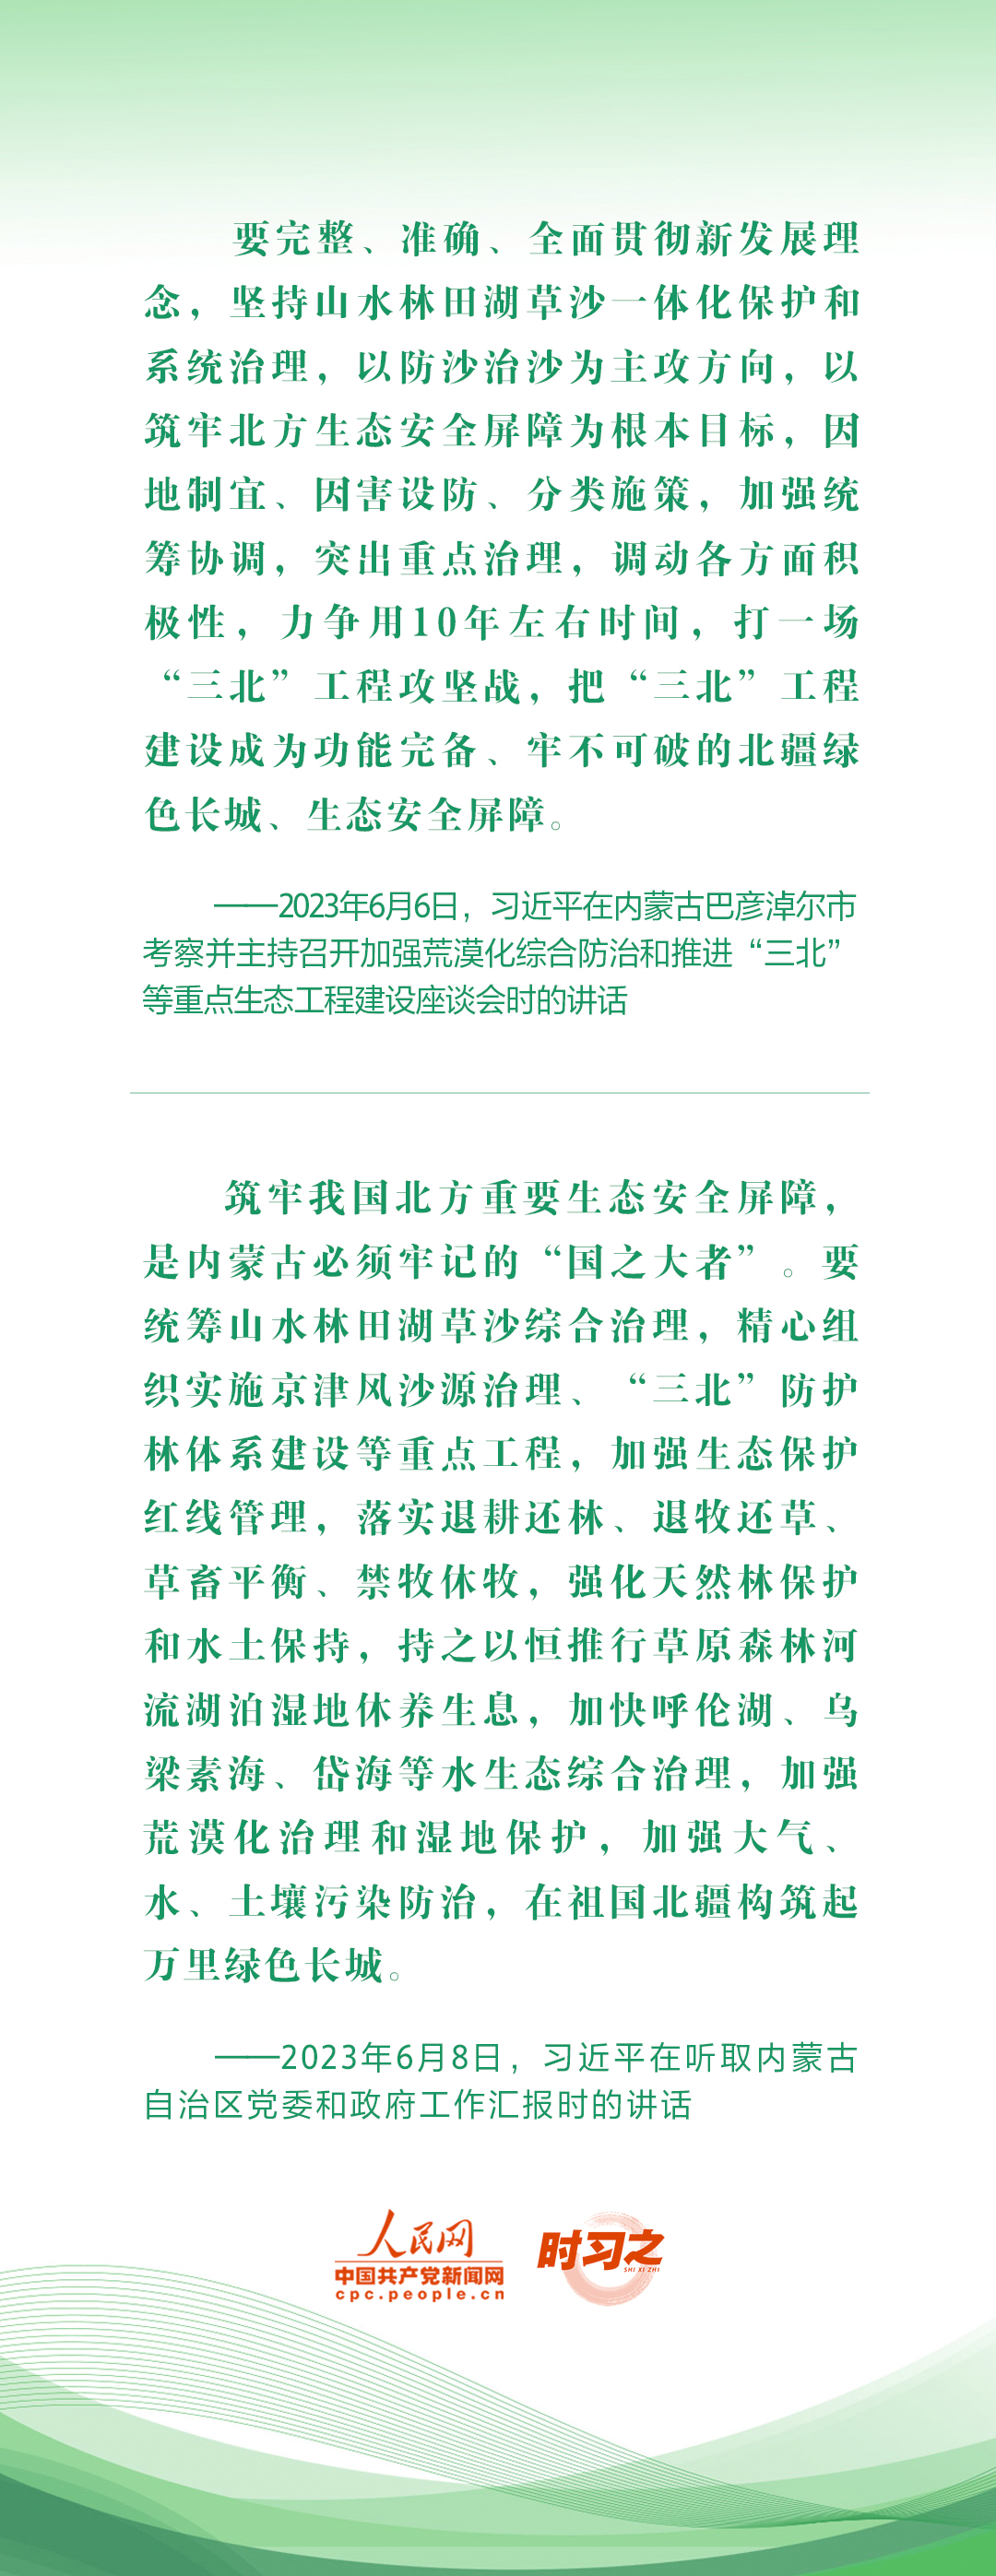 绿水青山映初心 总书记心系“绿色中国”